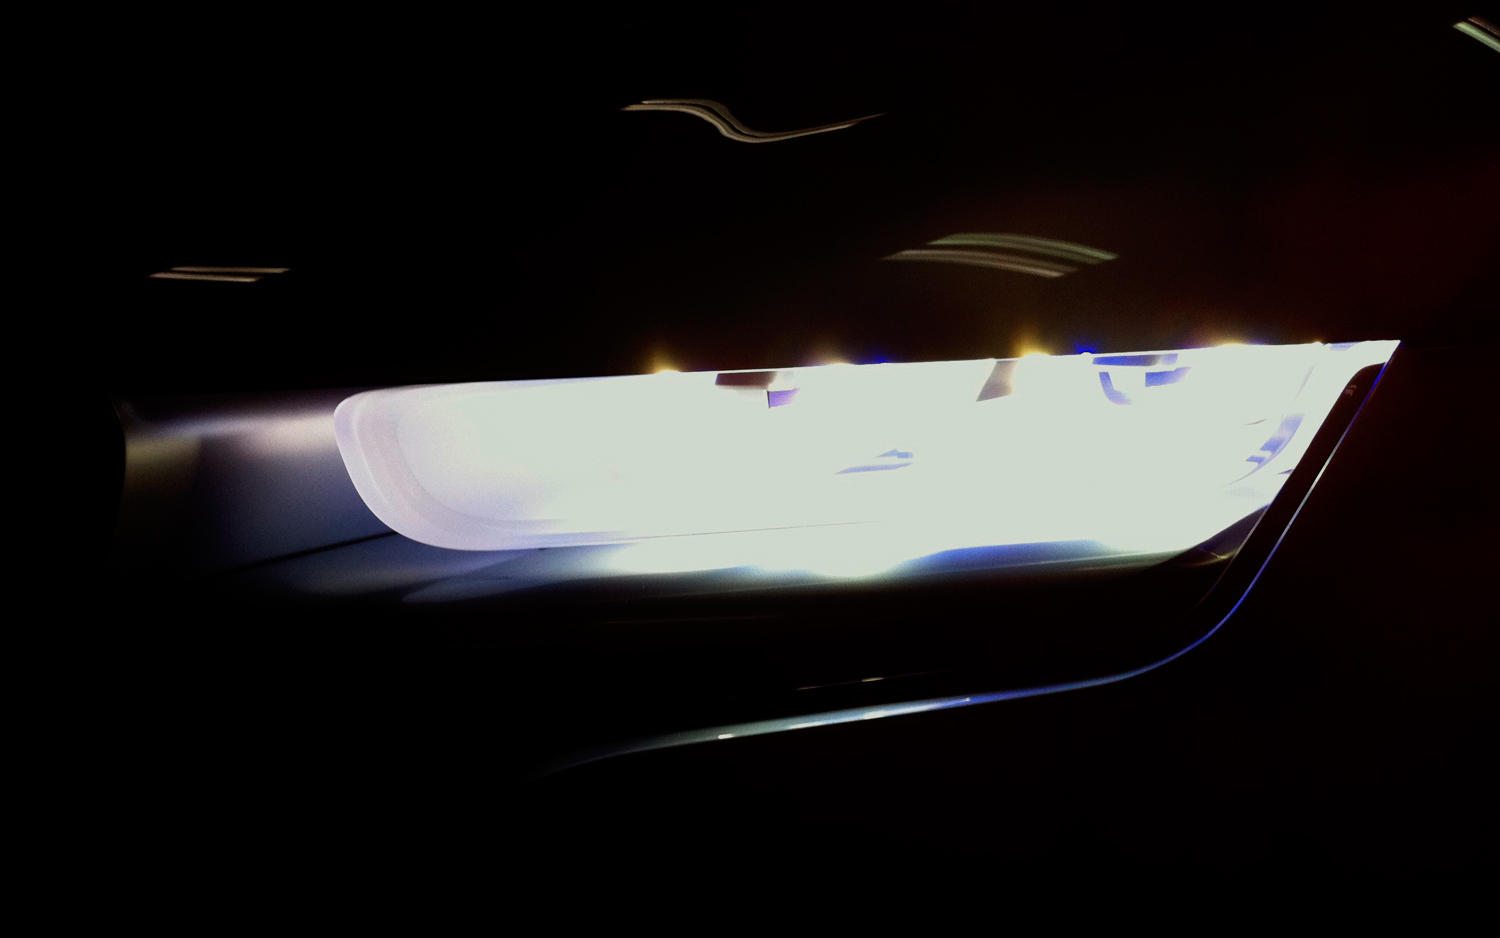 Лазерные фары концепта BMW i8